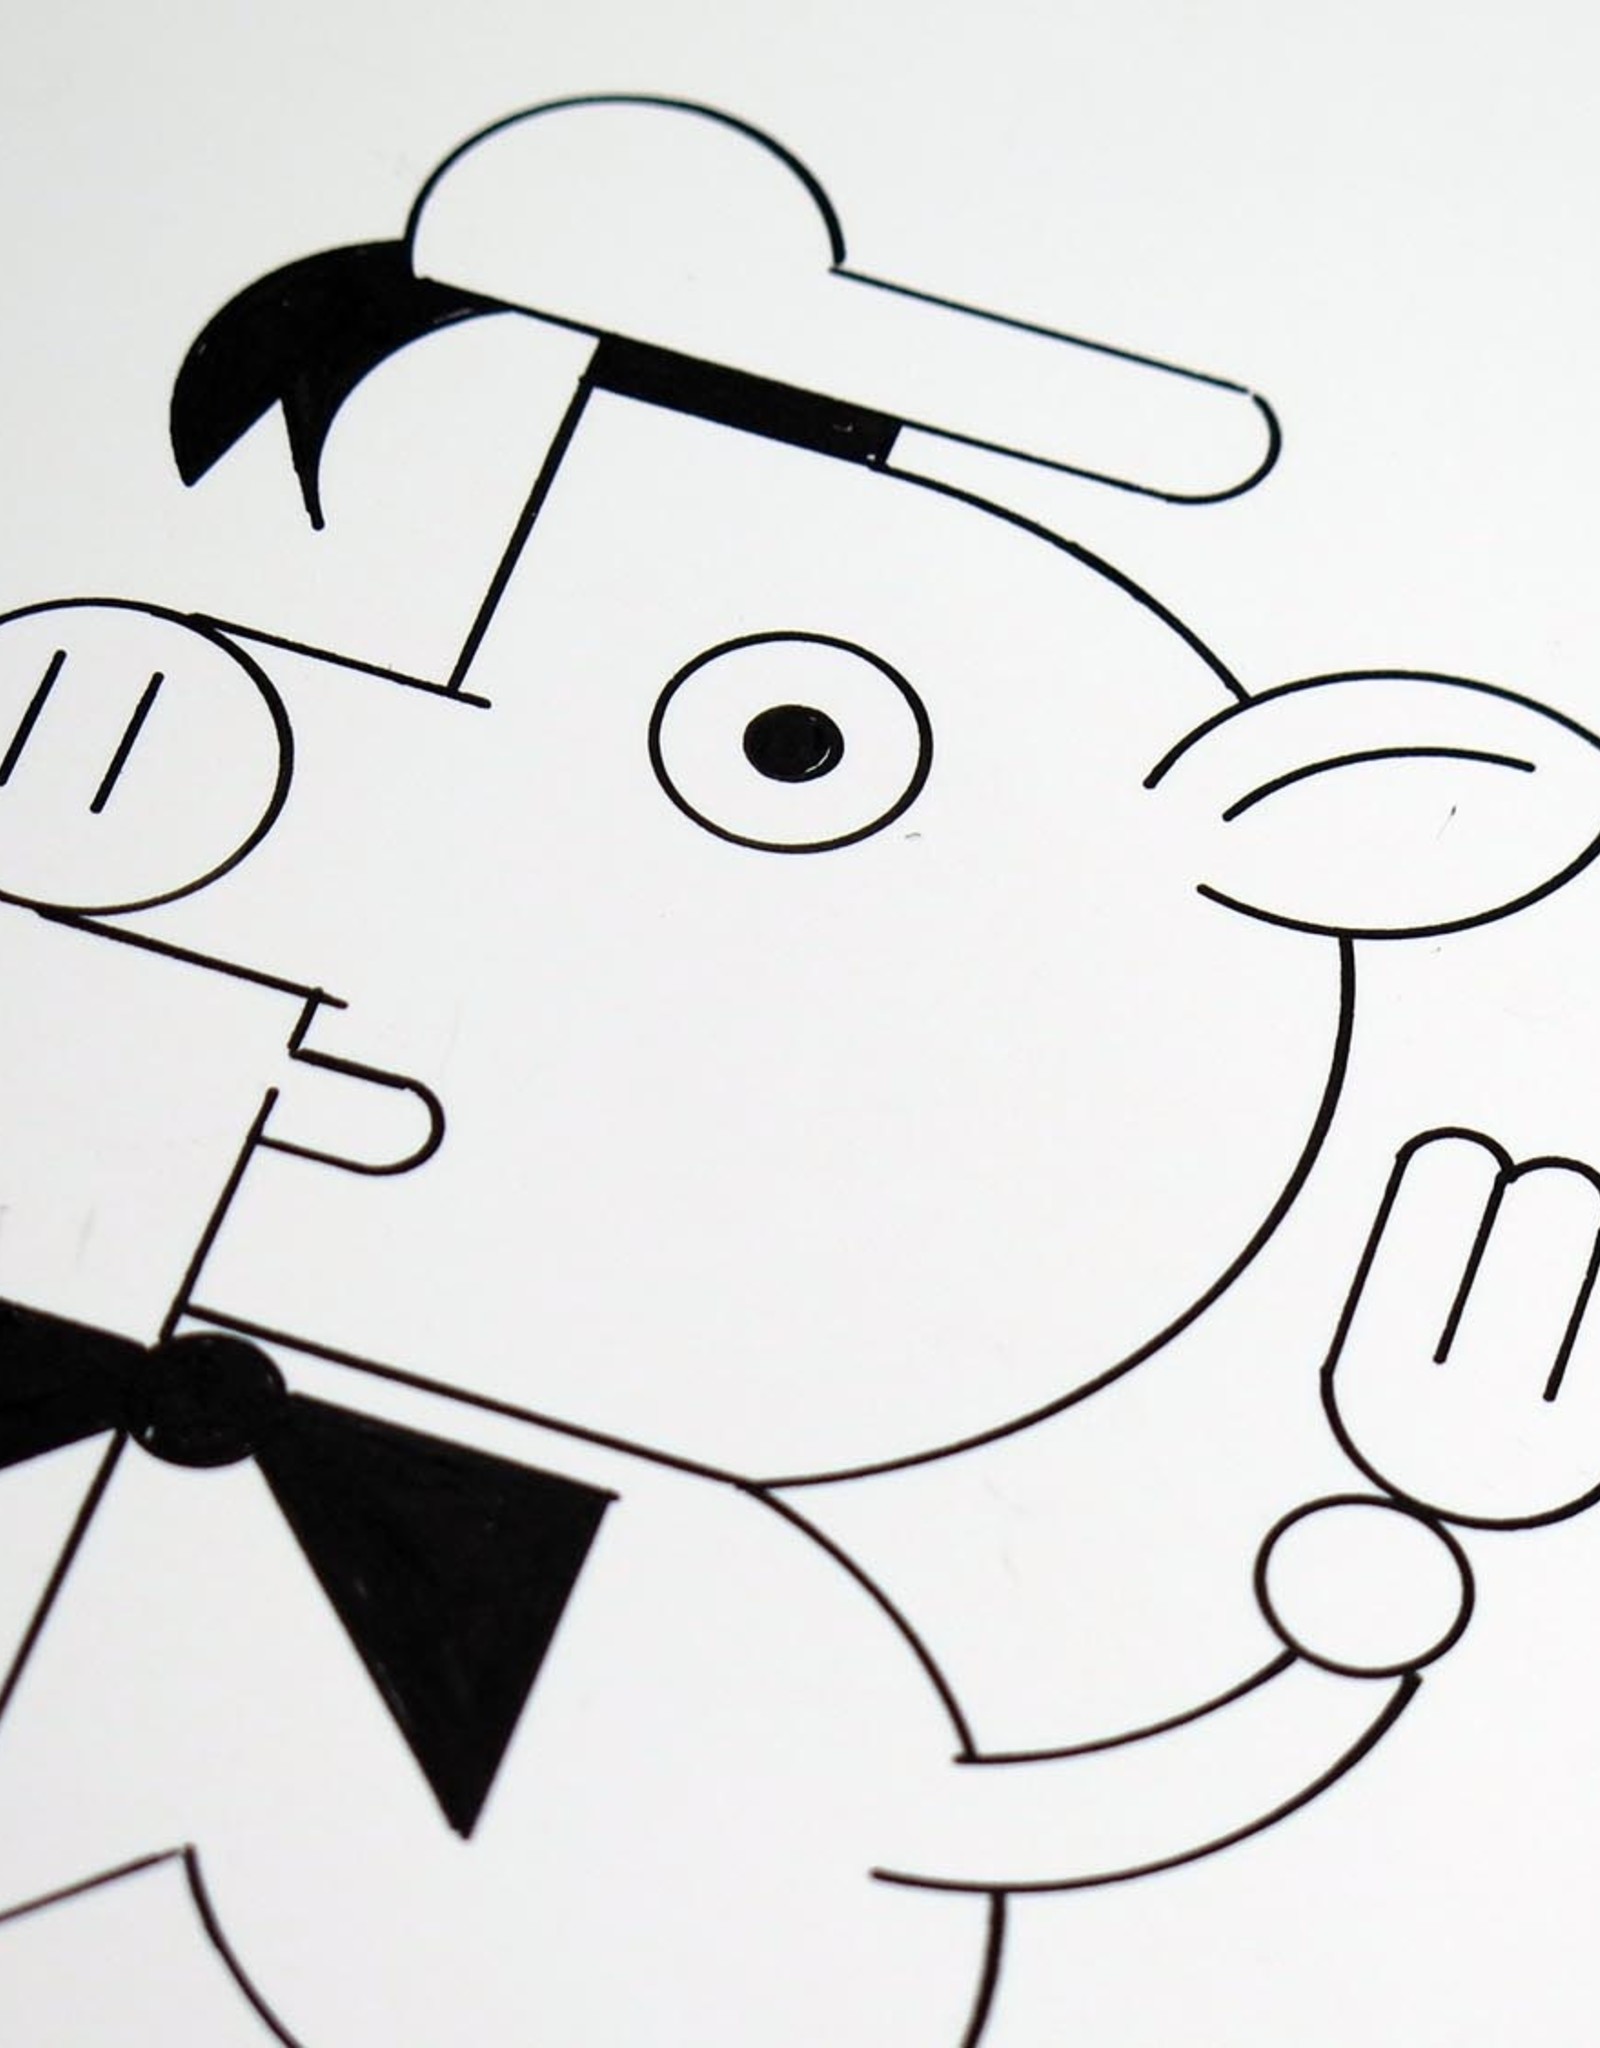 Ivan Brunetti Pigs, Illustration by Ivan Brunetti